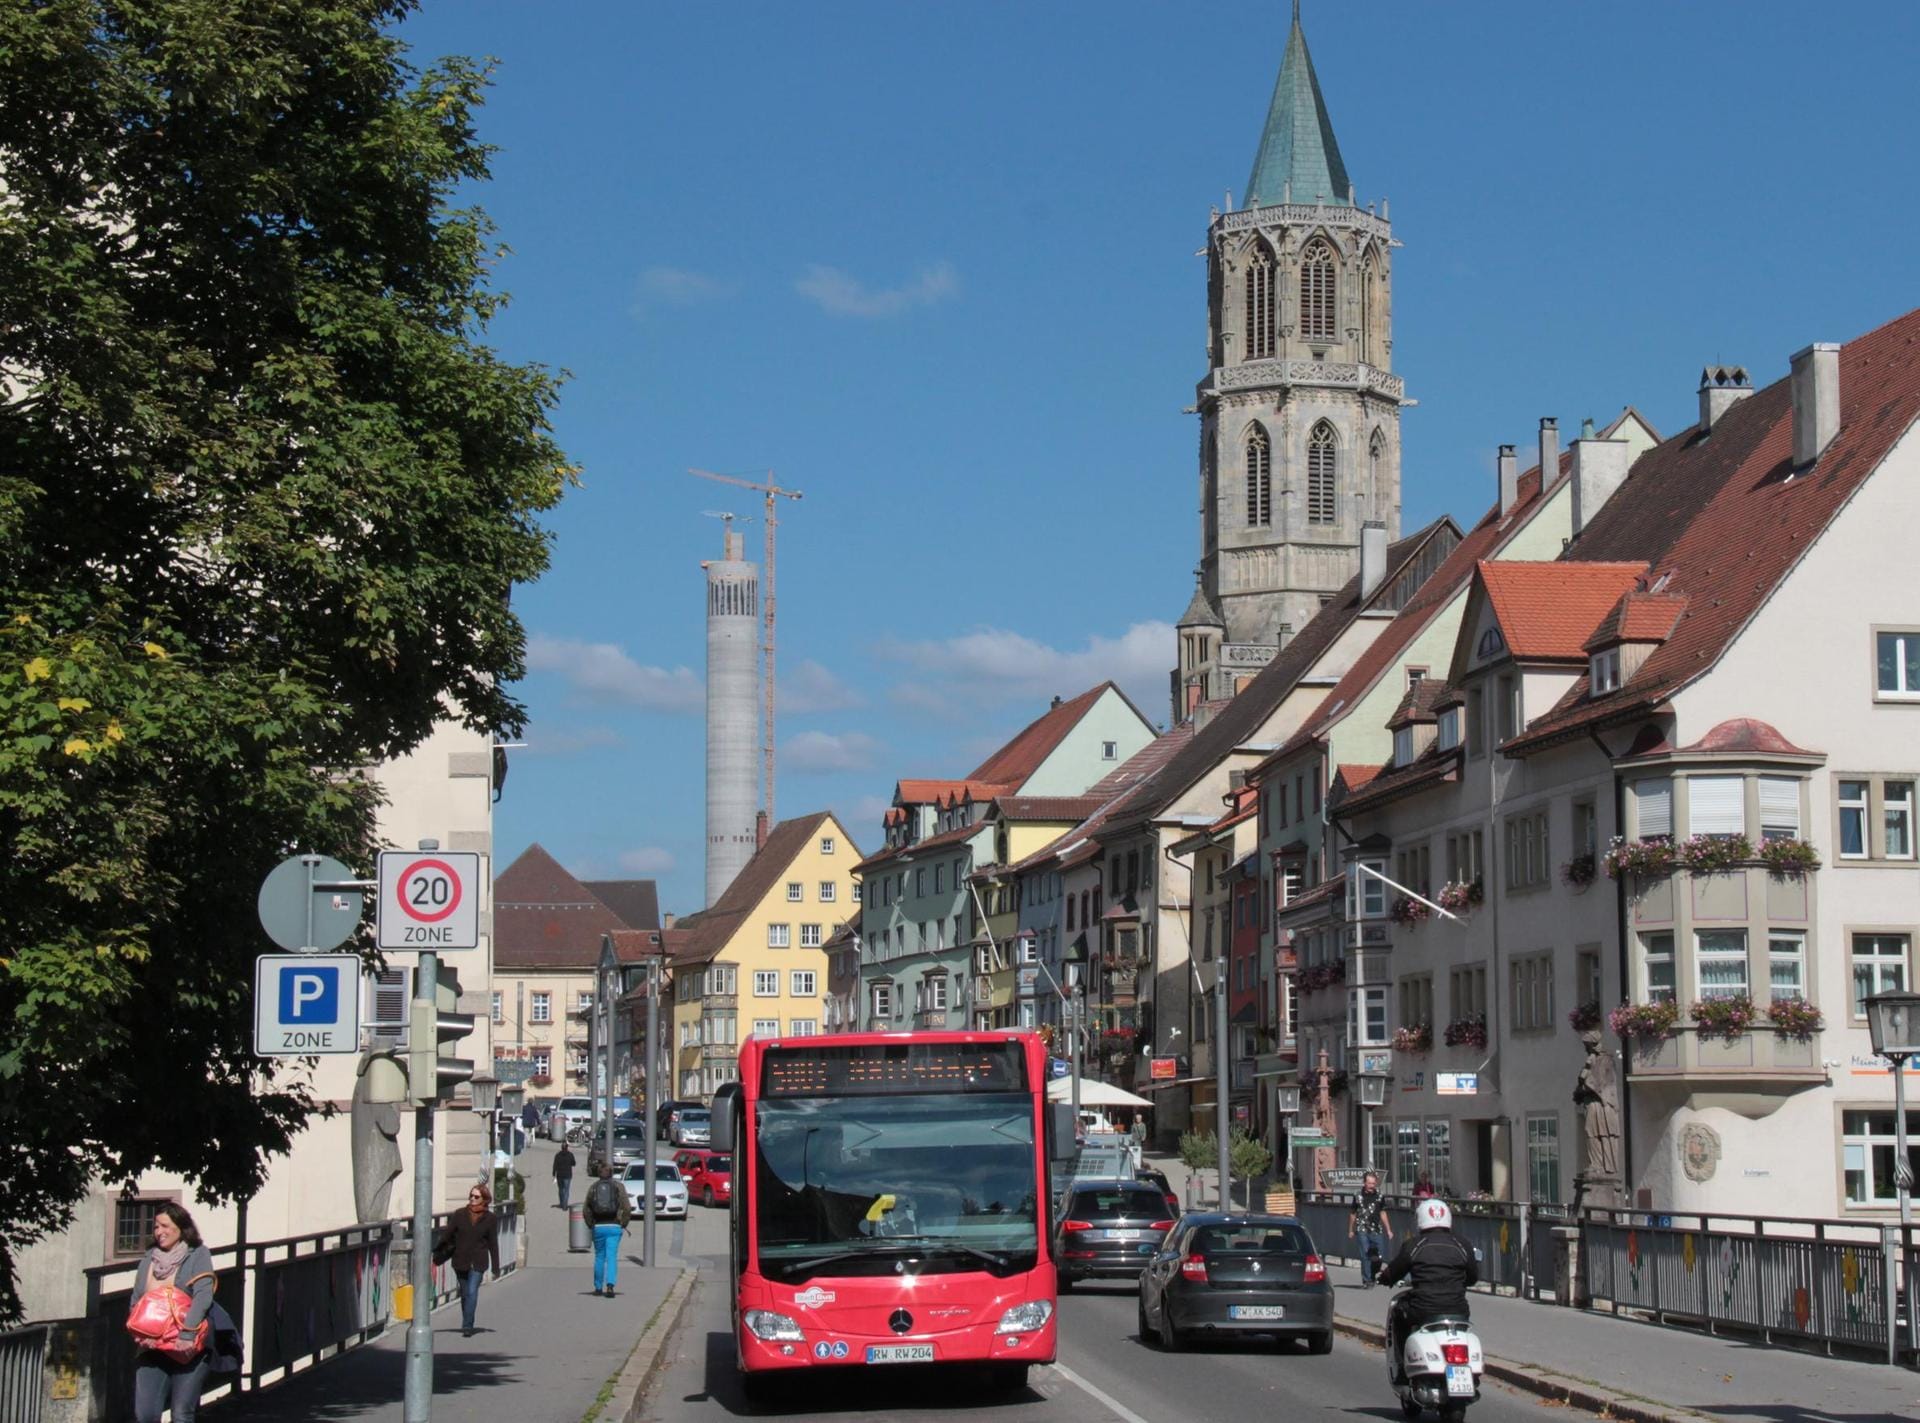 Die schwäbische Kleinstadt Rottweil bekommt ein neues Touristenhighlight, das am 7. Oktober mit einem spektakulären Turmfest eingeweiht wird.